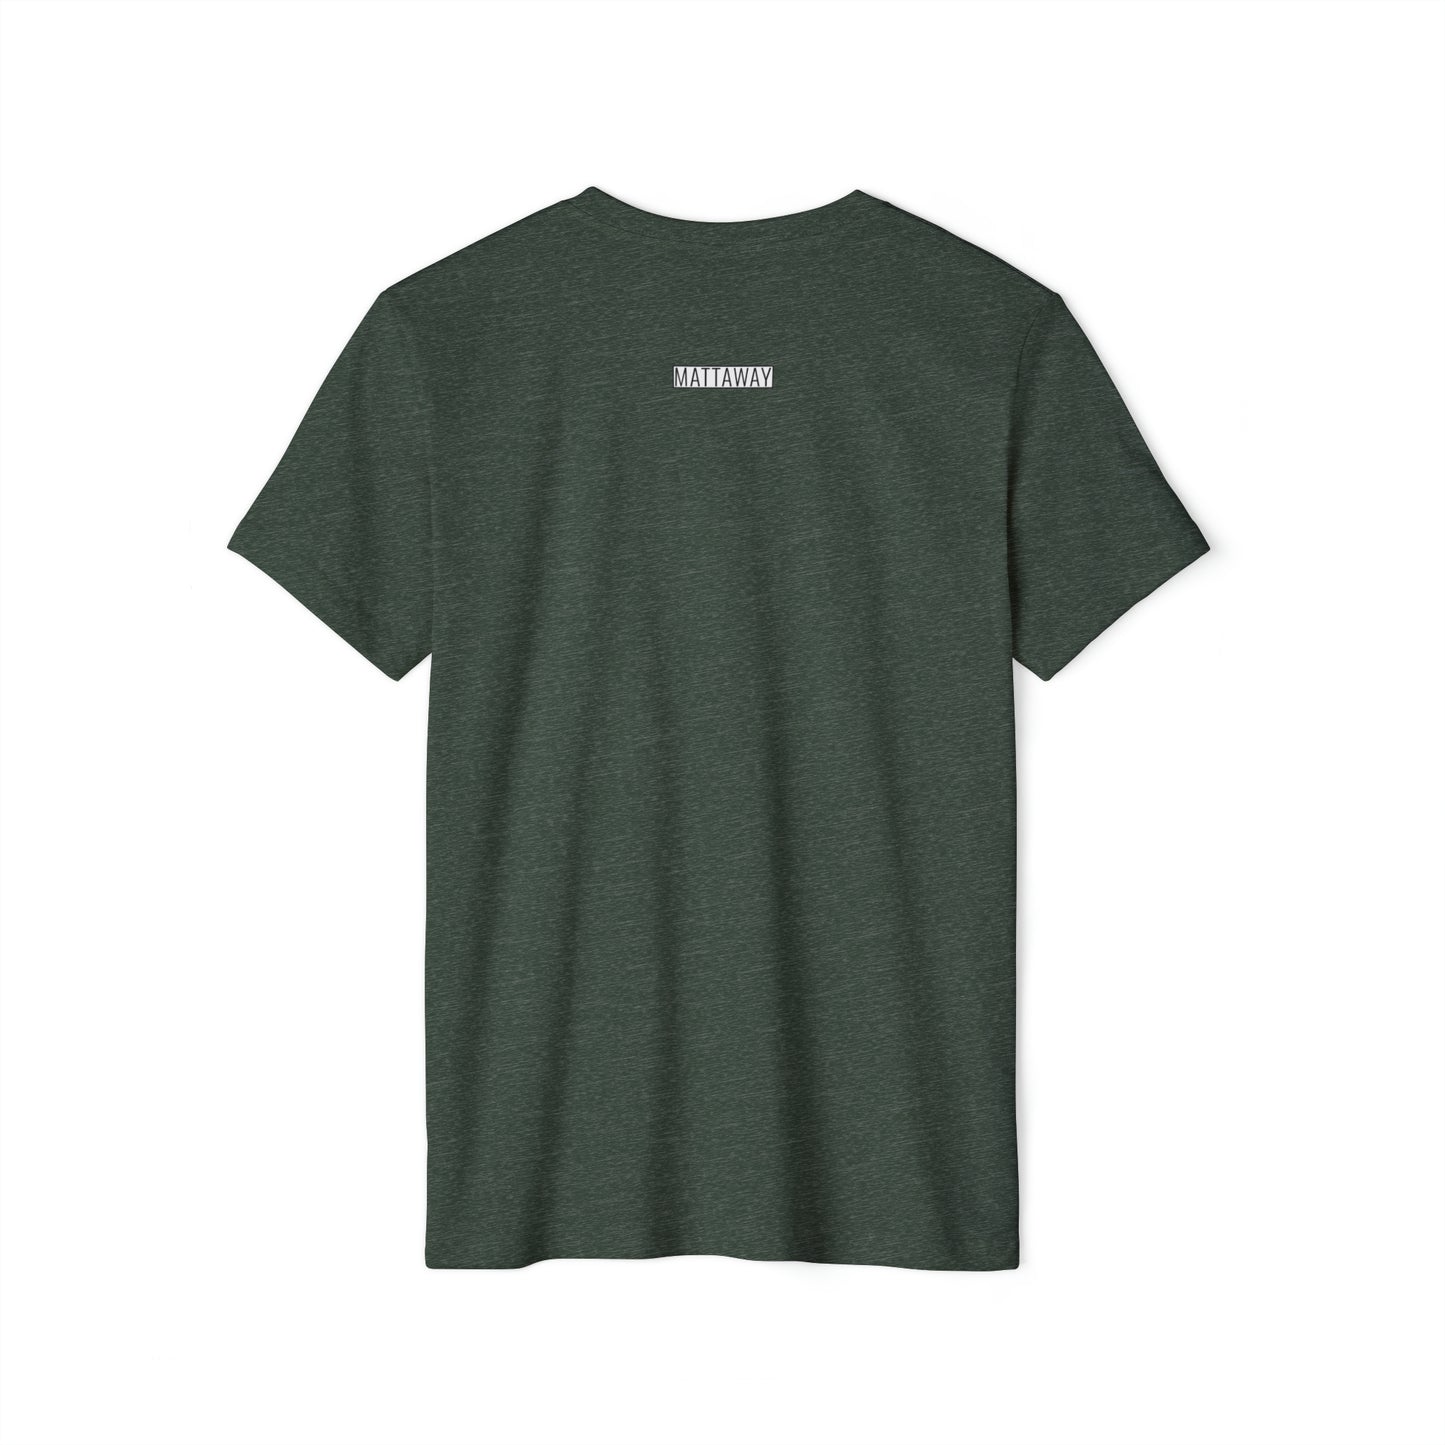 MINIMAL SHAPE 102 - Camiseta ecológica reciclada unisex